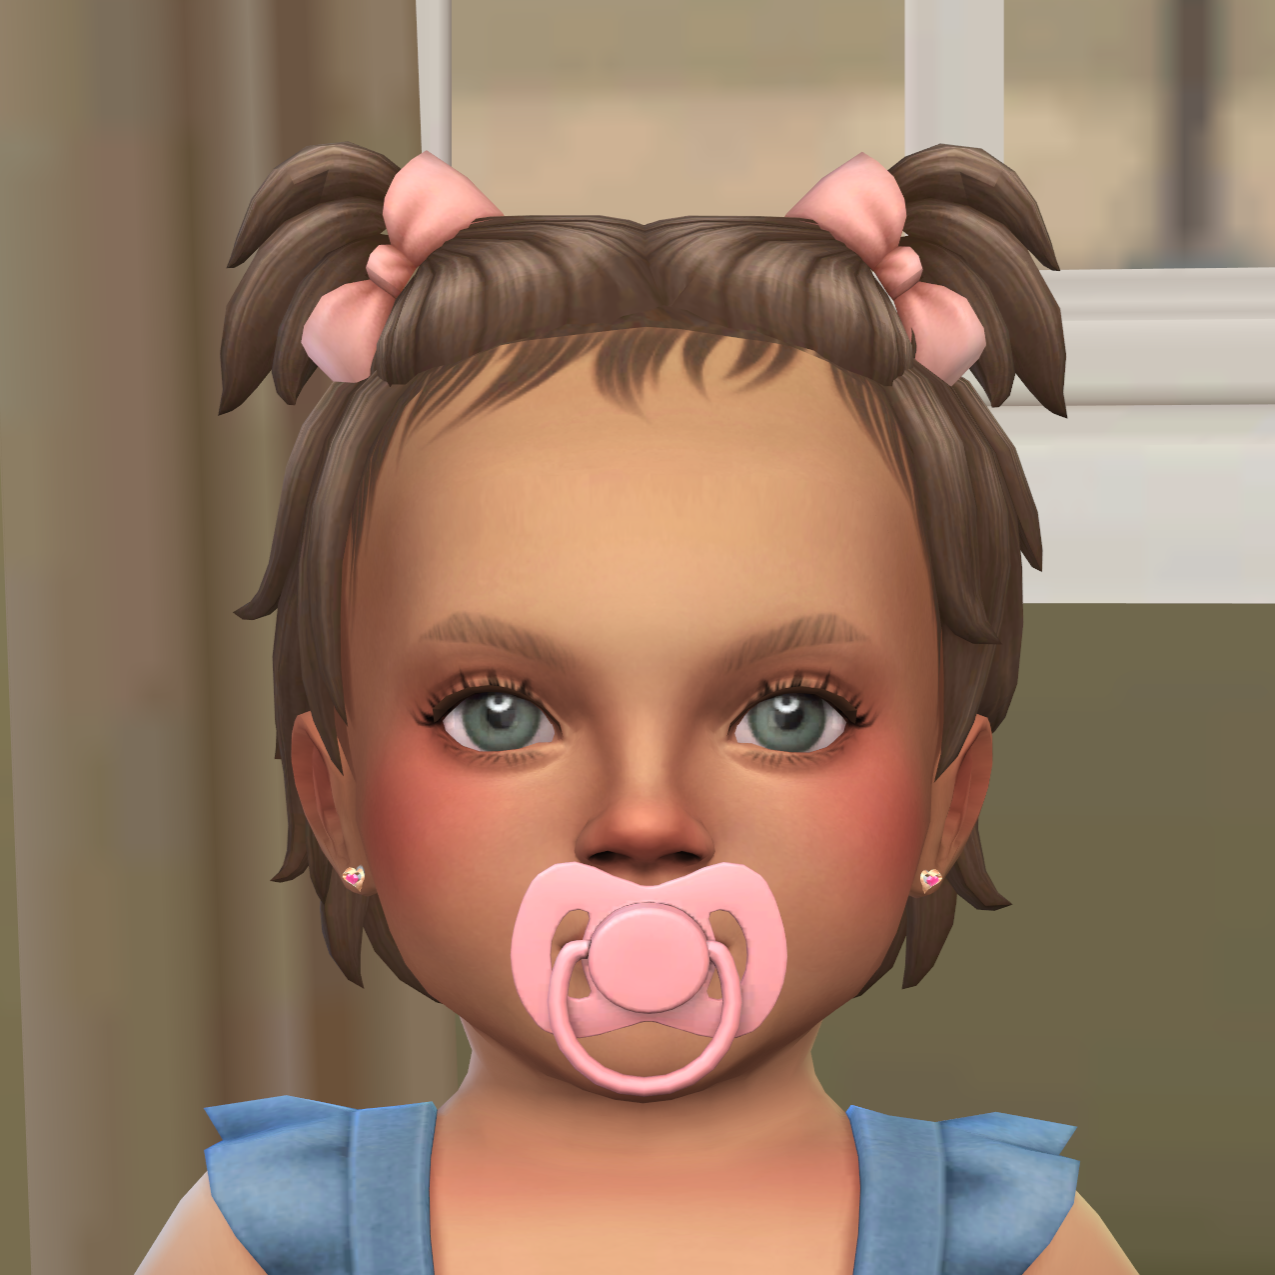 Infant Heart Earrings project avatar